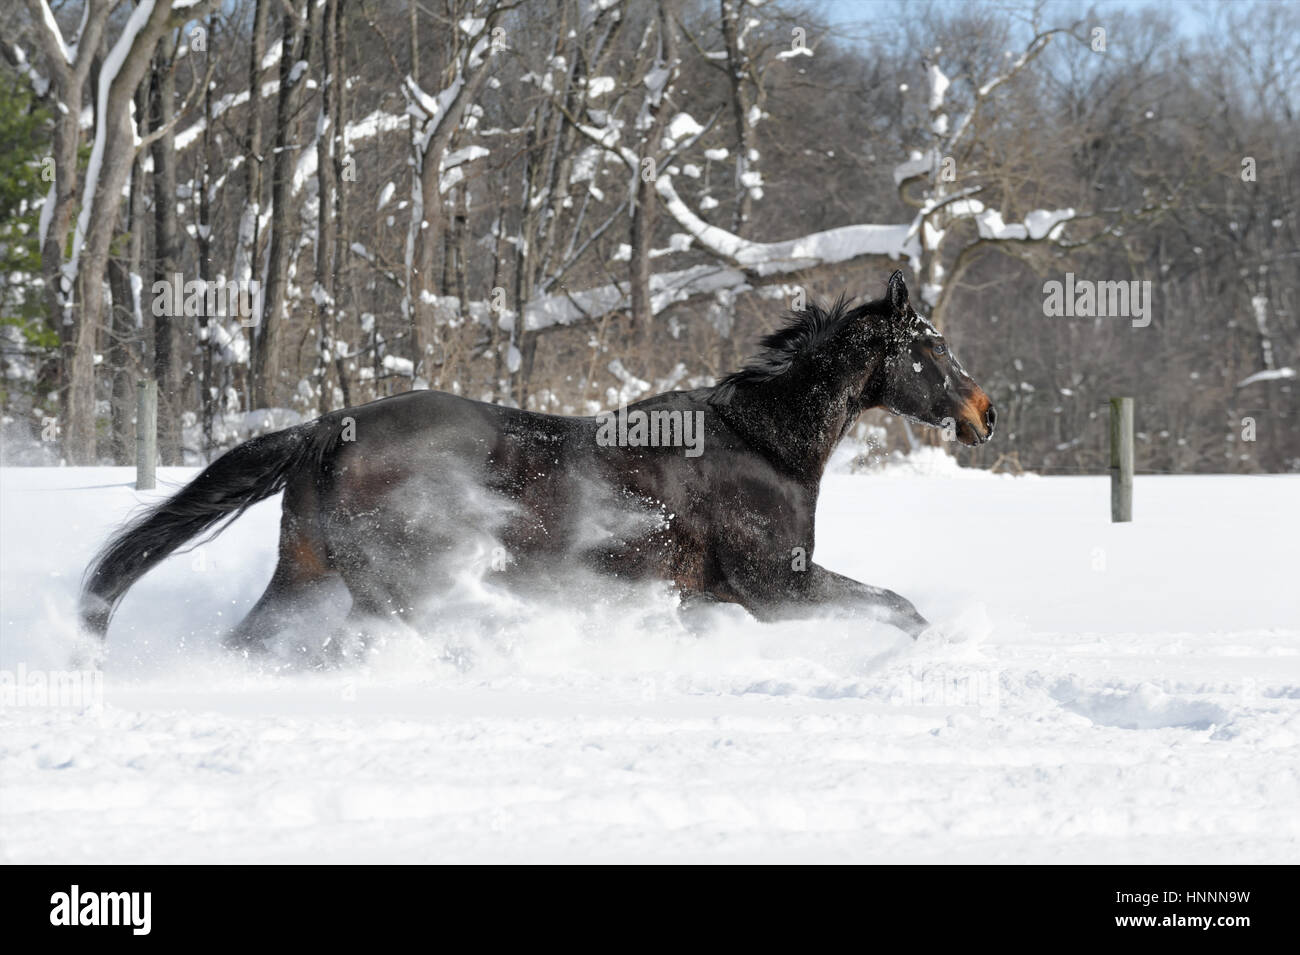 Quarter horse en vista lateral con una melena negra ejecutando vigorosamente a través de la profunda nieve en polvo, cerca de una línea de árboles en una soleada finca vallada en campo en invierno Foto de stock